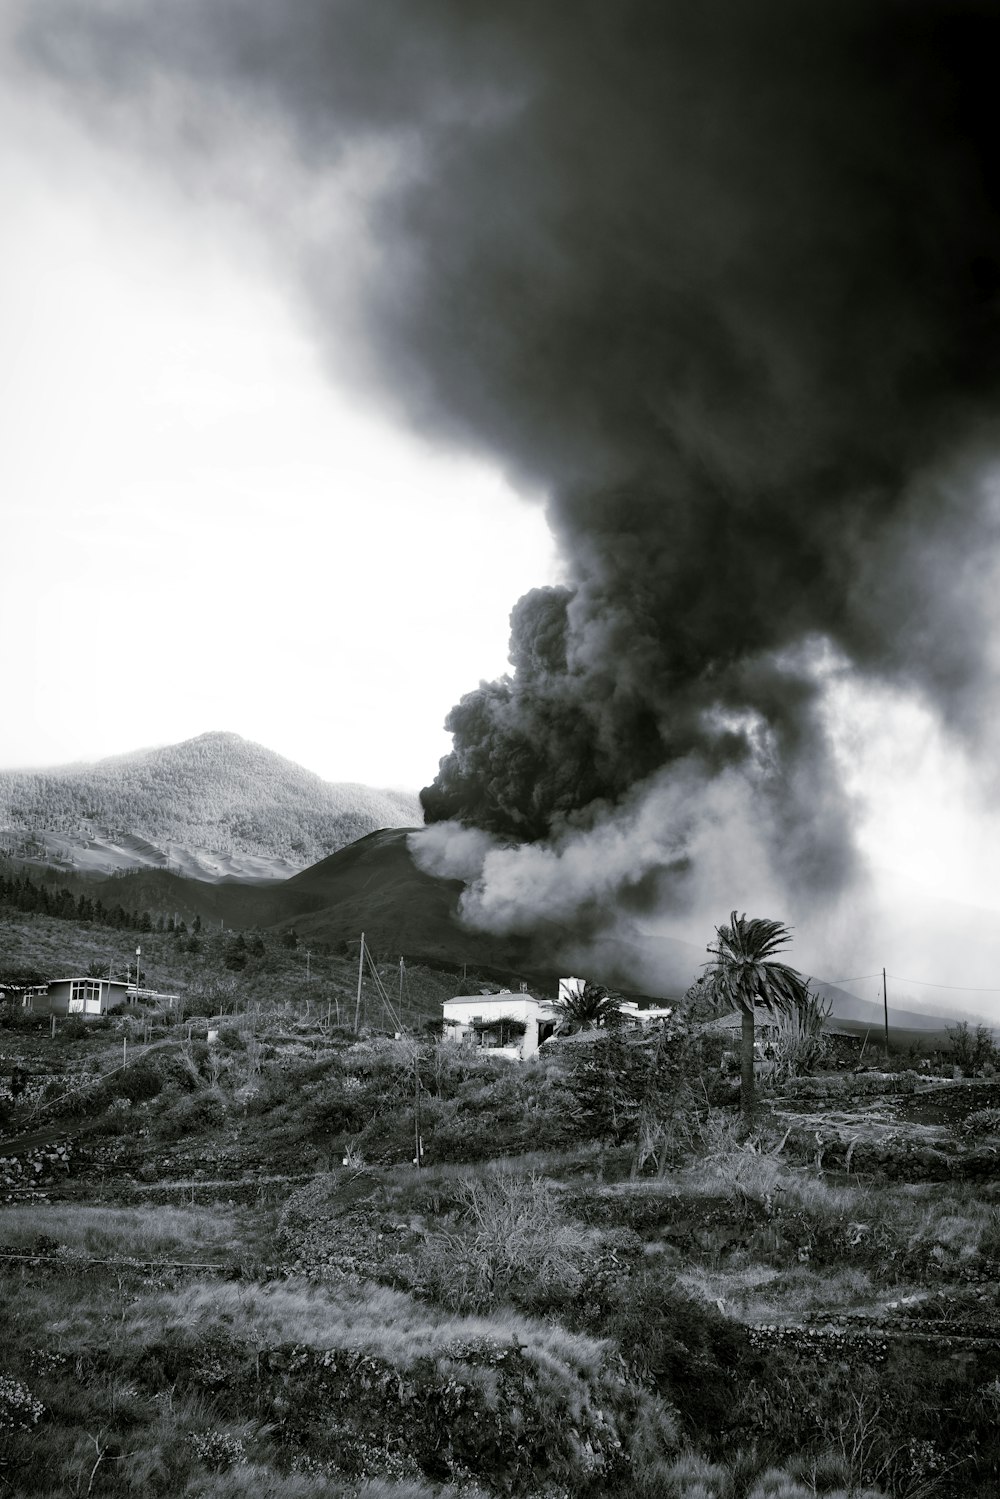 Une photo en noir et blanc d’un grand panache de fumée